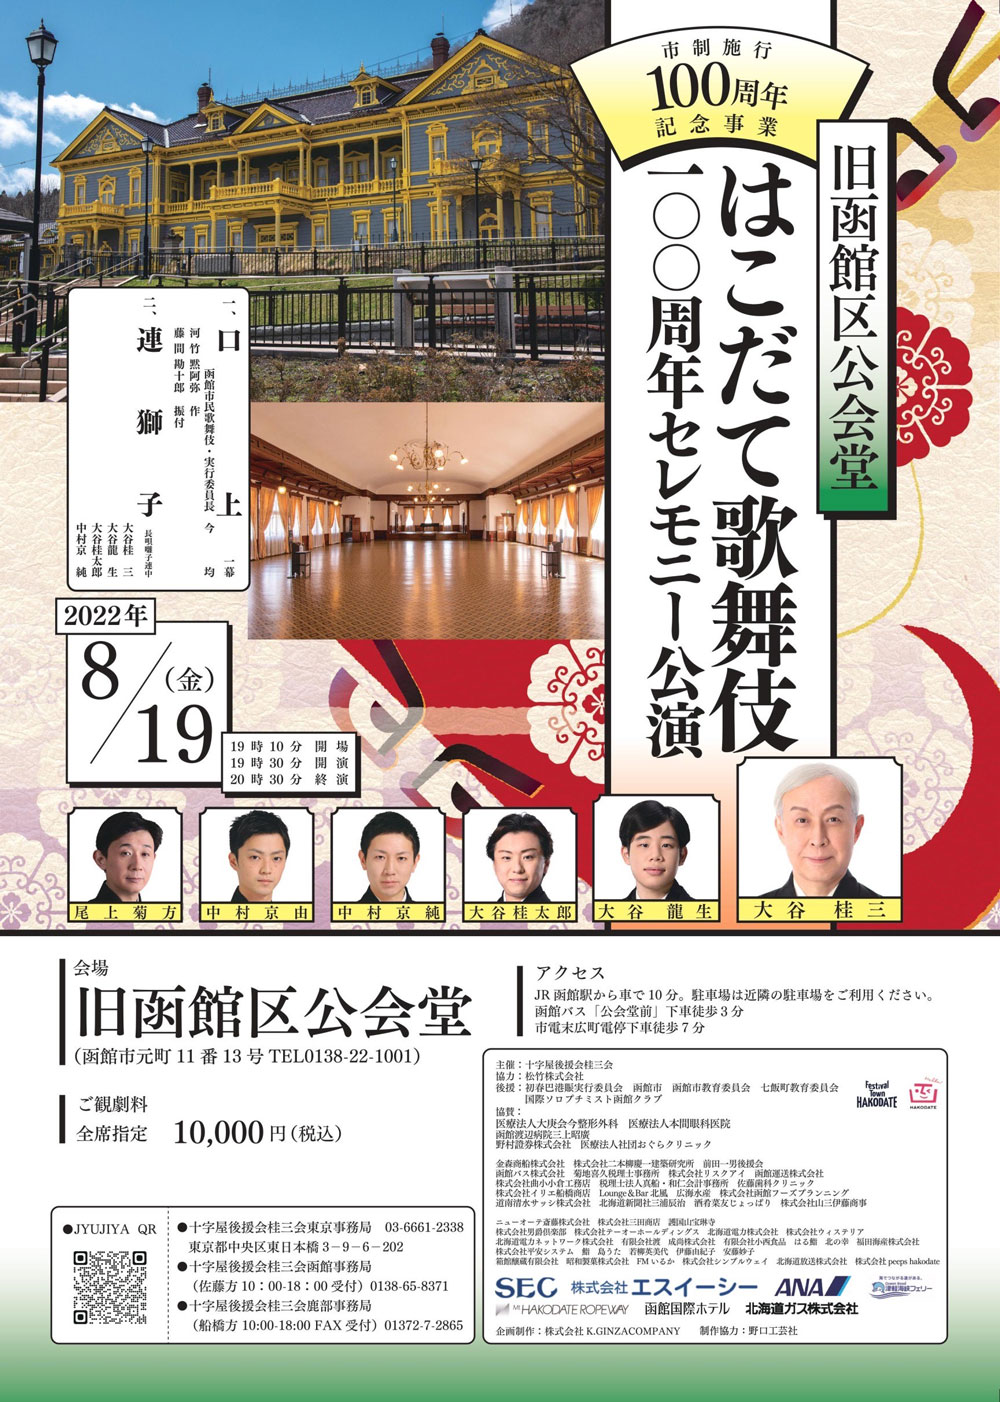 「旧函館区公会堂 はこだて歌舞伎100周年セレモニー公演」「歌舞伎鑑賞教室 はこだて歌舞伎公演」のお知らせ